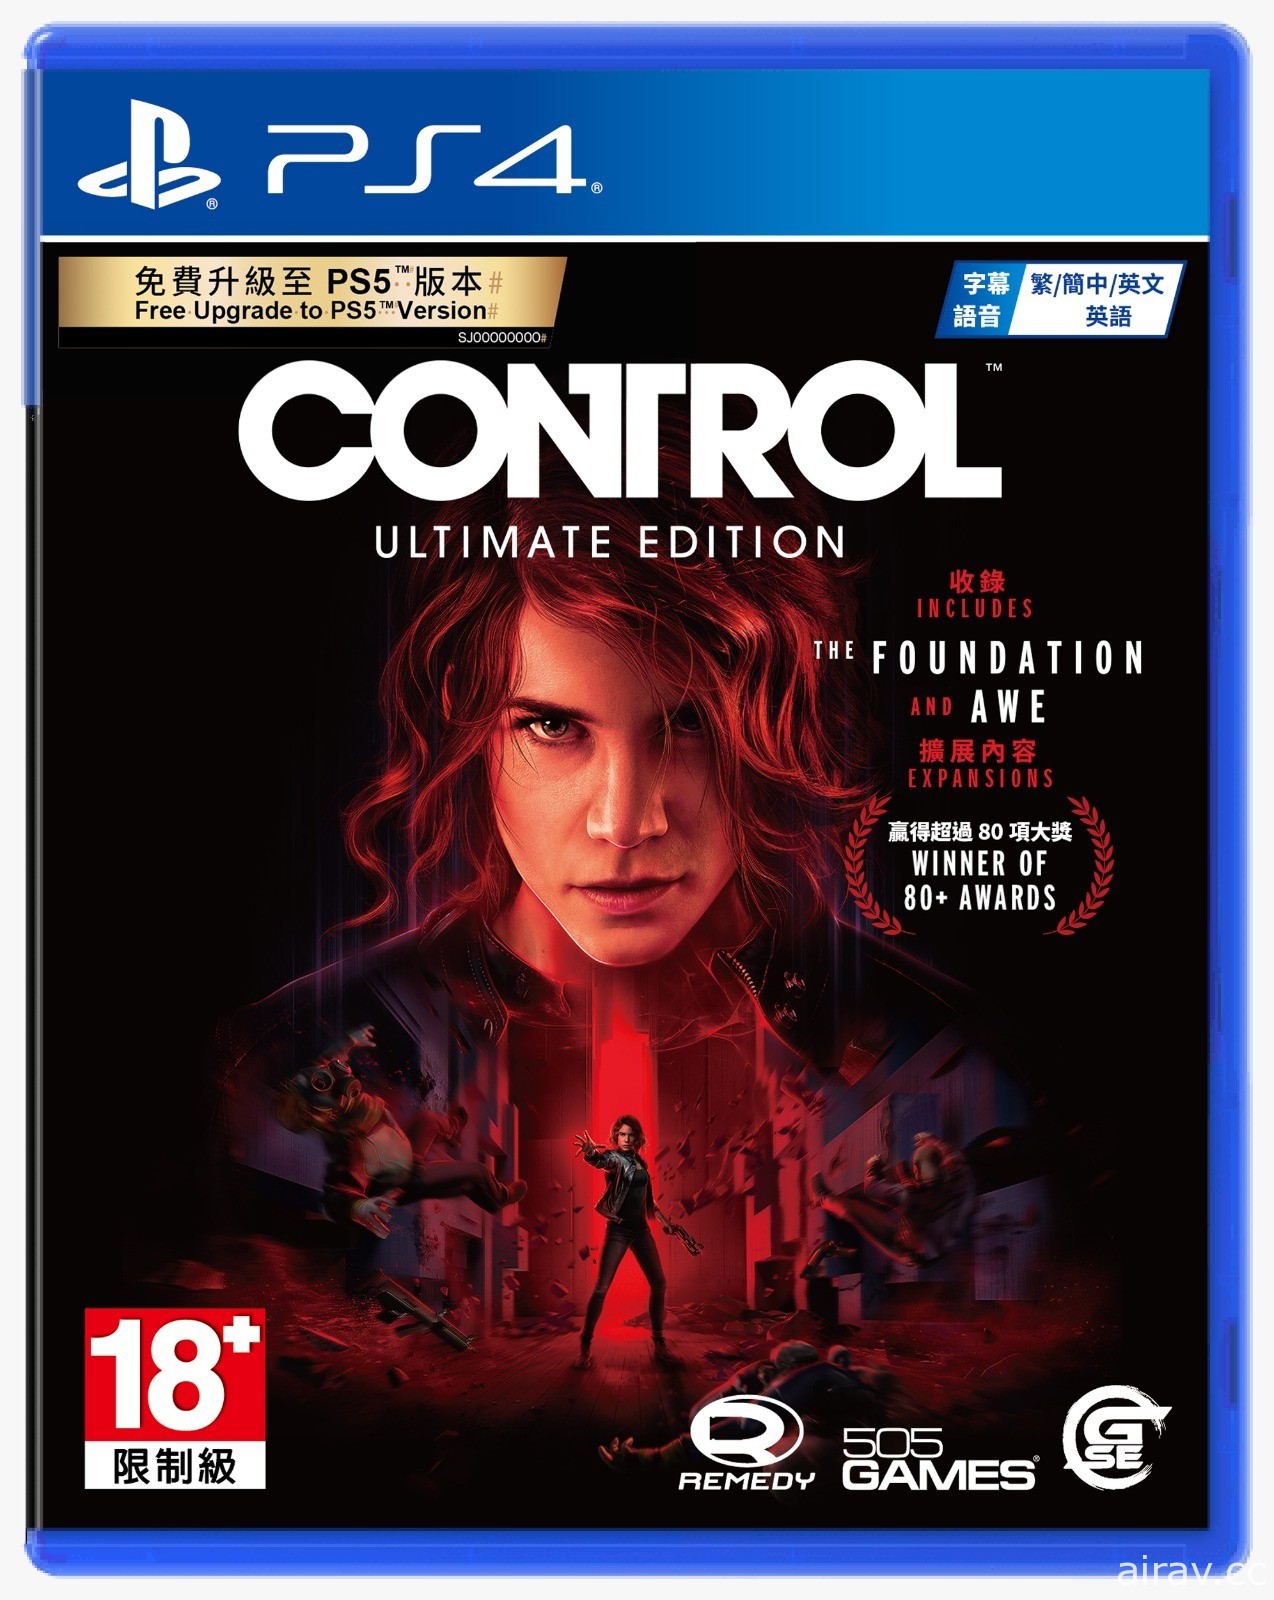 《控制 CONTROL 终极版》PS4 盒装版即将推出 可免费升级至 PS5 版本